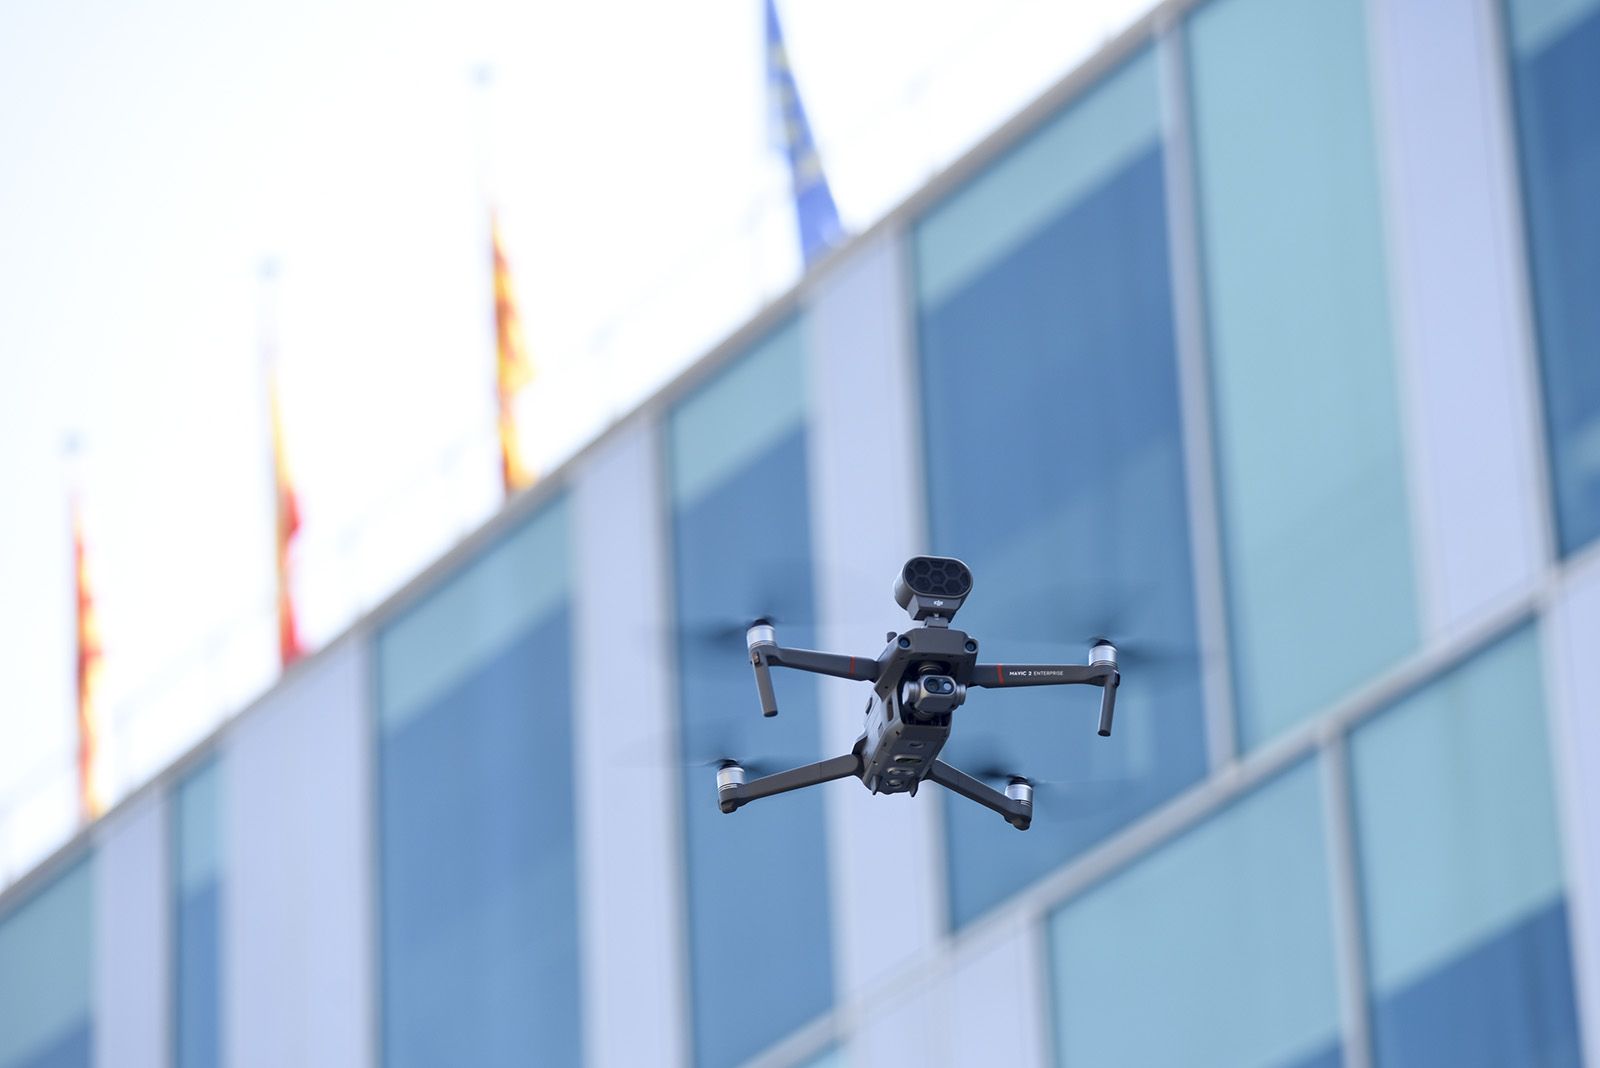 Presentació del dron de confinament a Sant Cugat. Foto: Bernat Millet